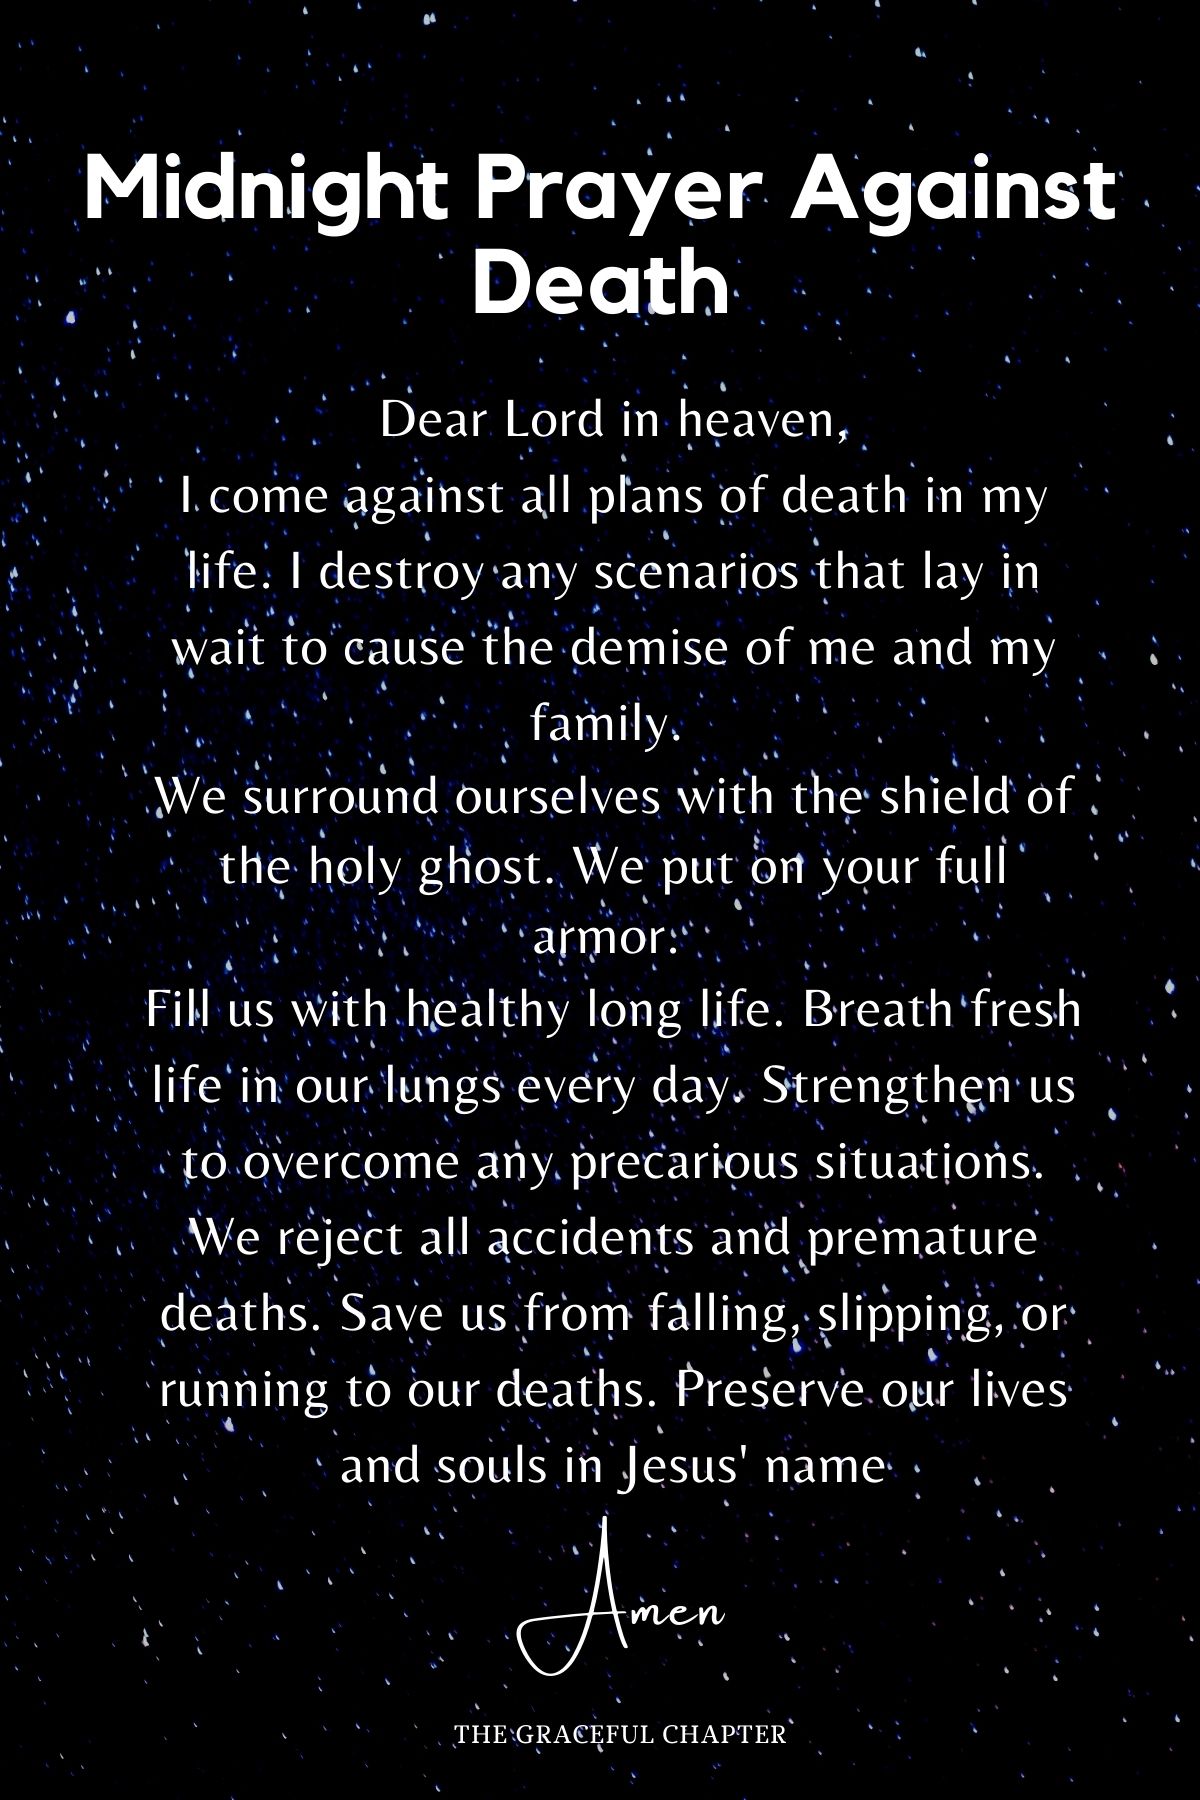 Midnight prayer against death